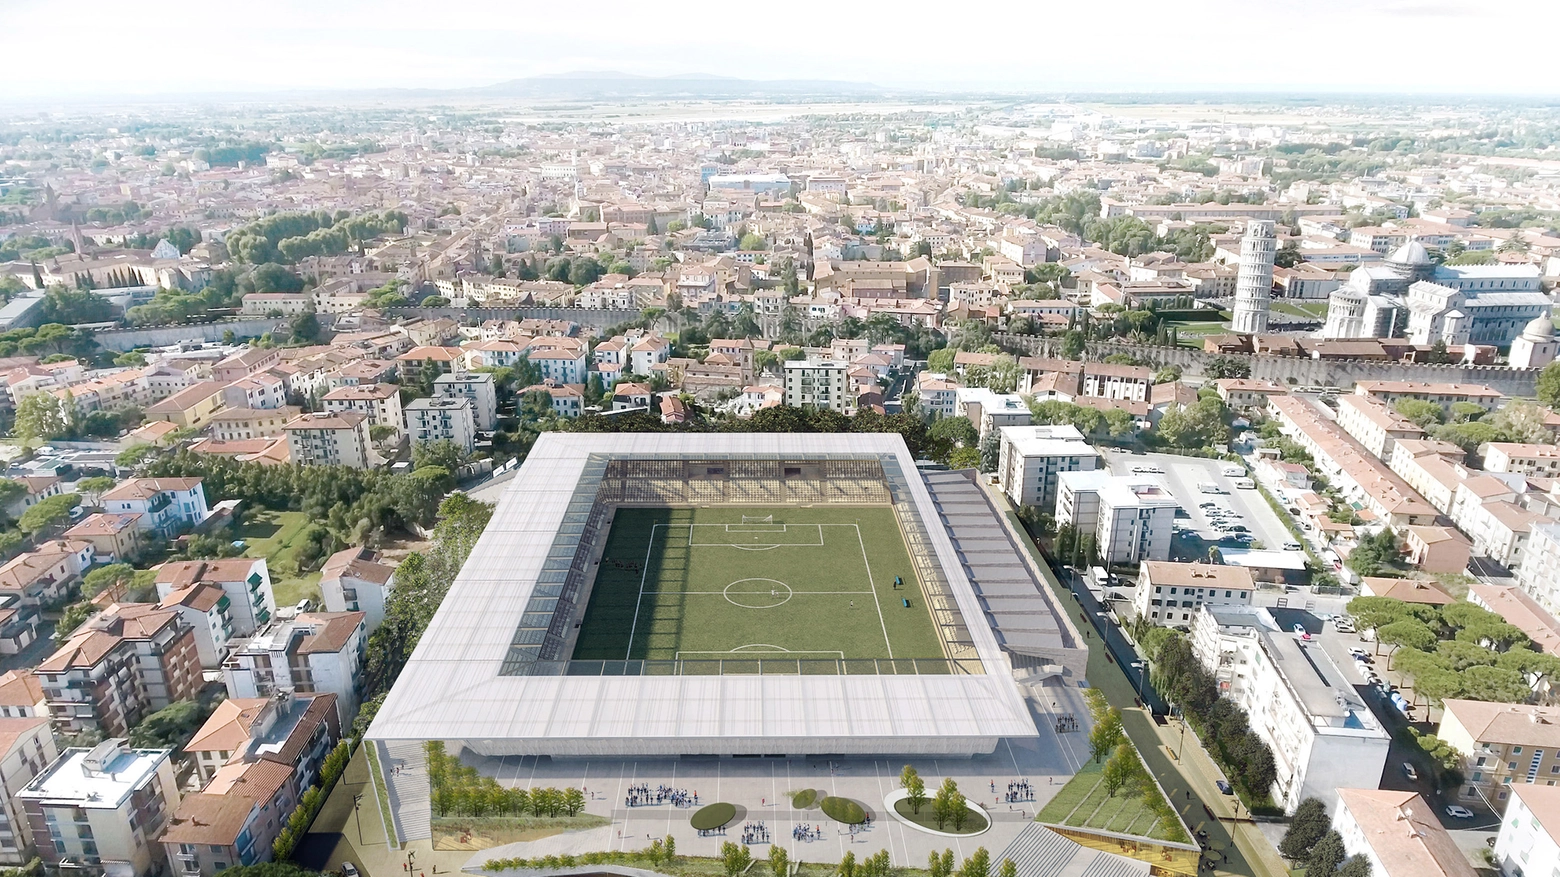 La nuova Arena Garibaldi: il progetto approvato dal comitato tecnico